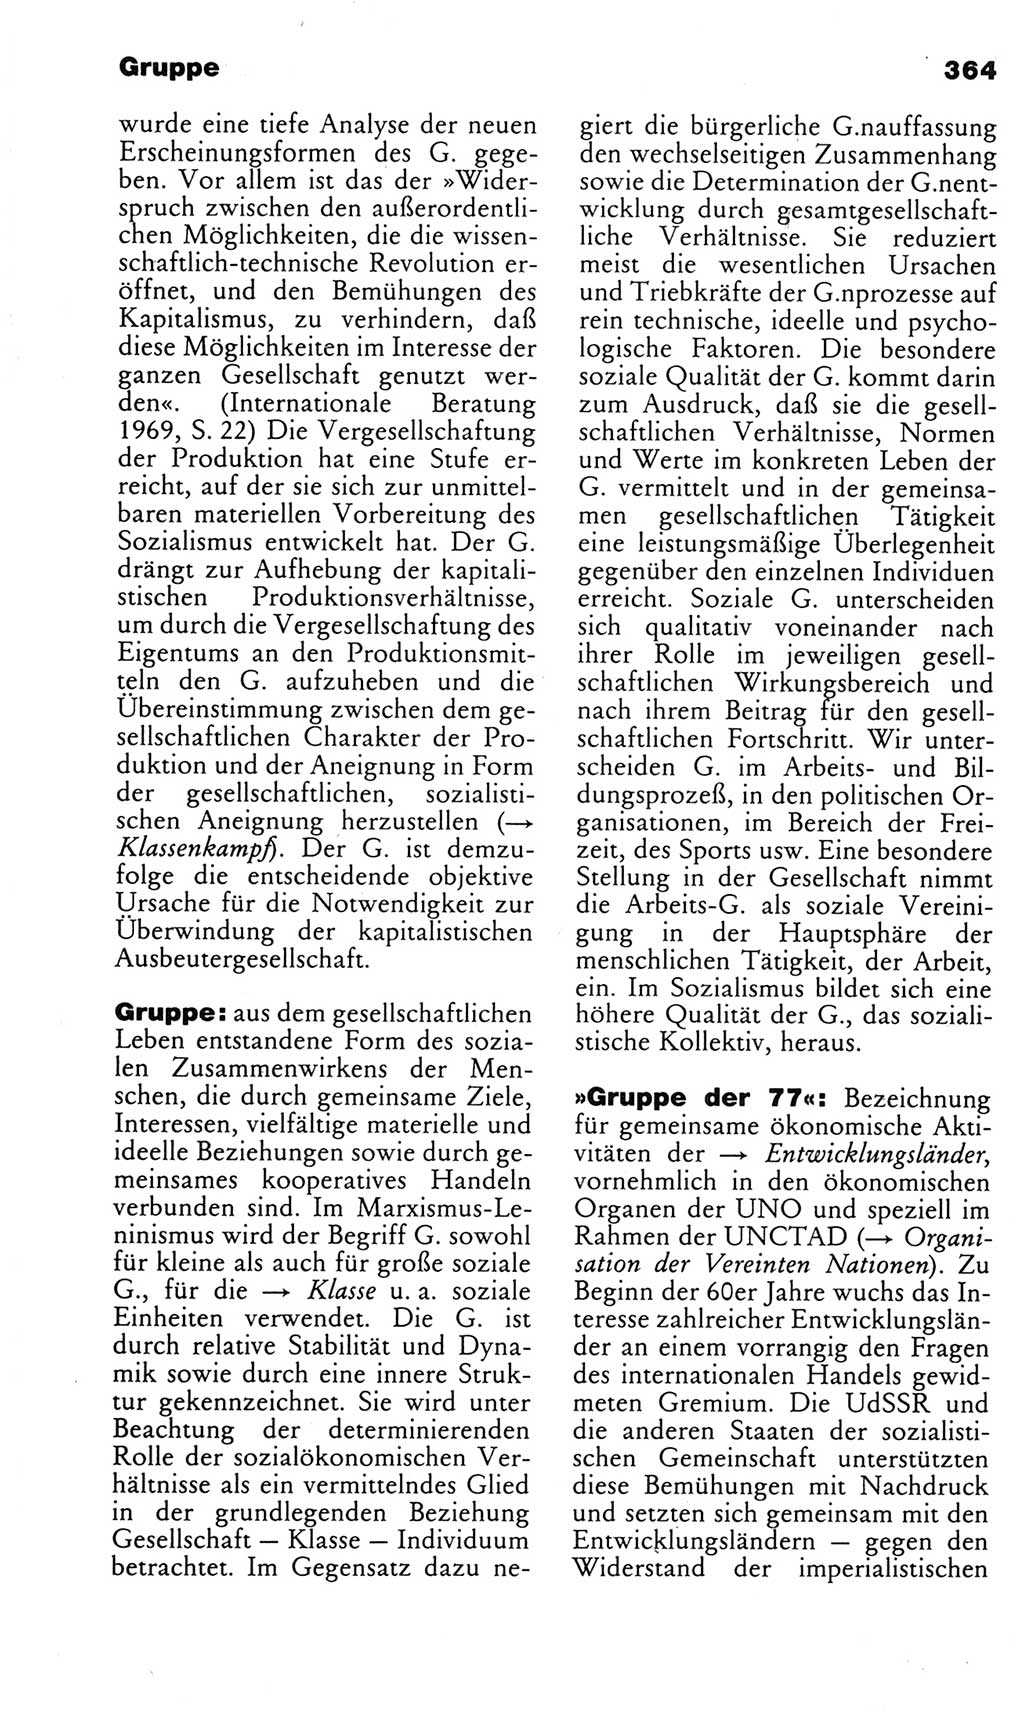 Kleines politisches Wörterbuch [Deutsche Demokratische Republik (DDR)] 1983, Seite 364 (Kl. pol. Wb. DDR 1983, S. 364)